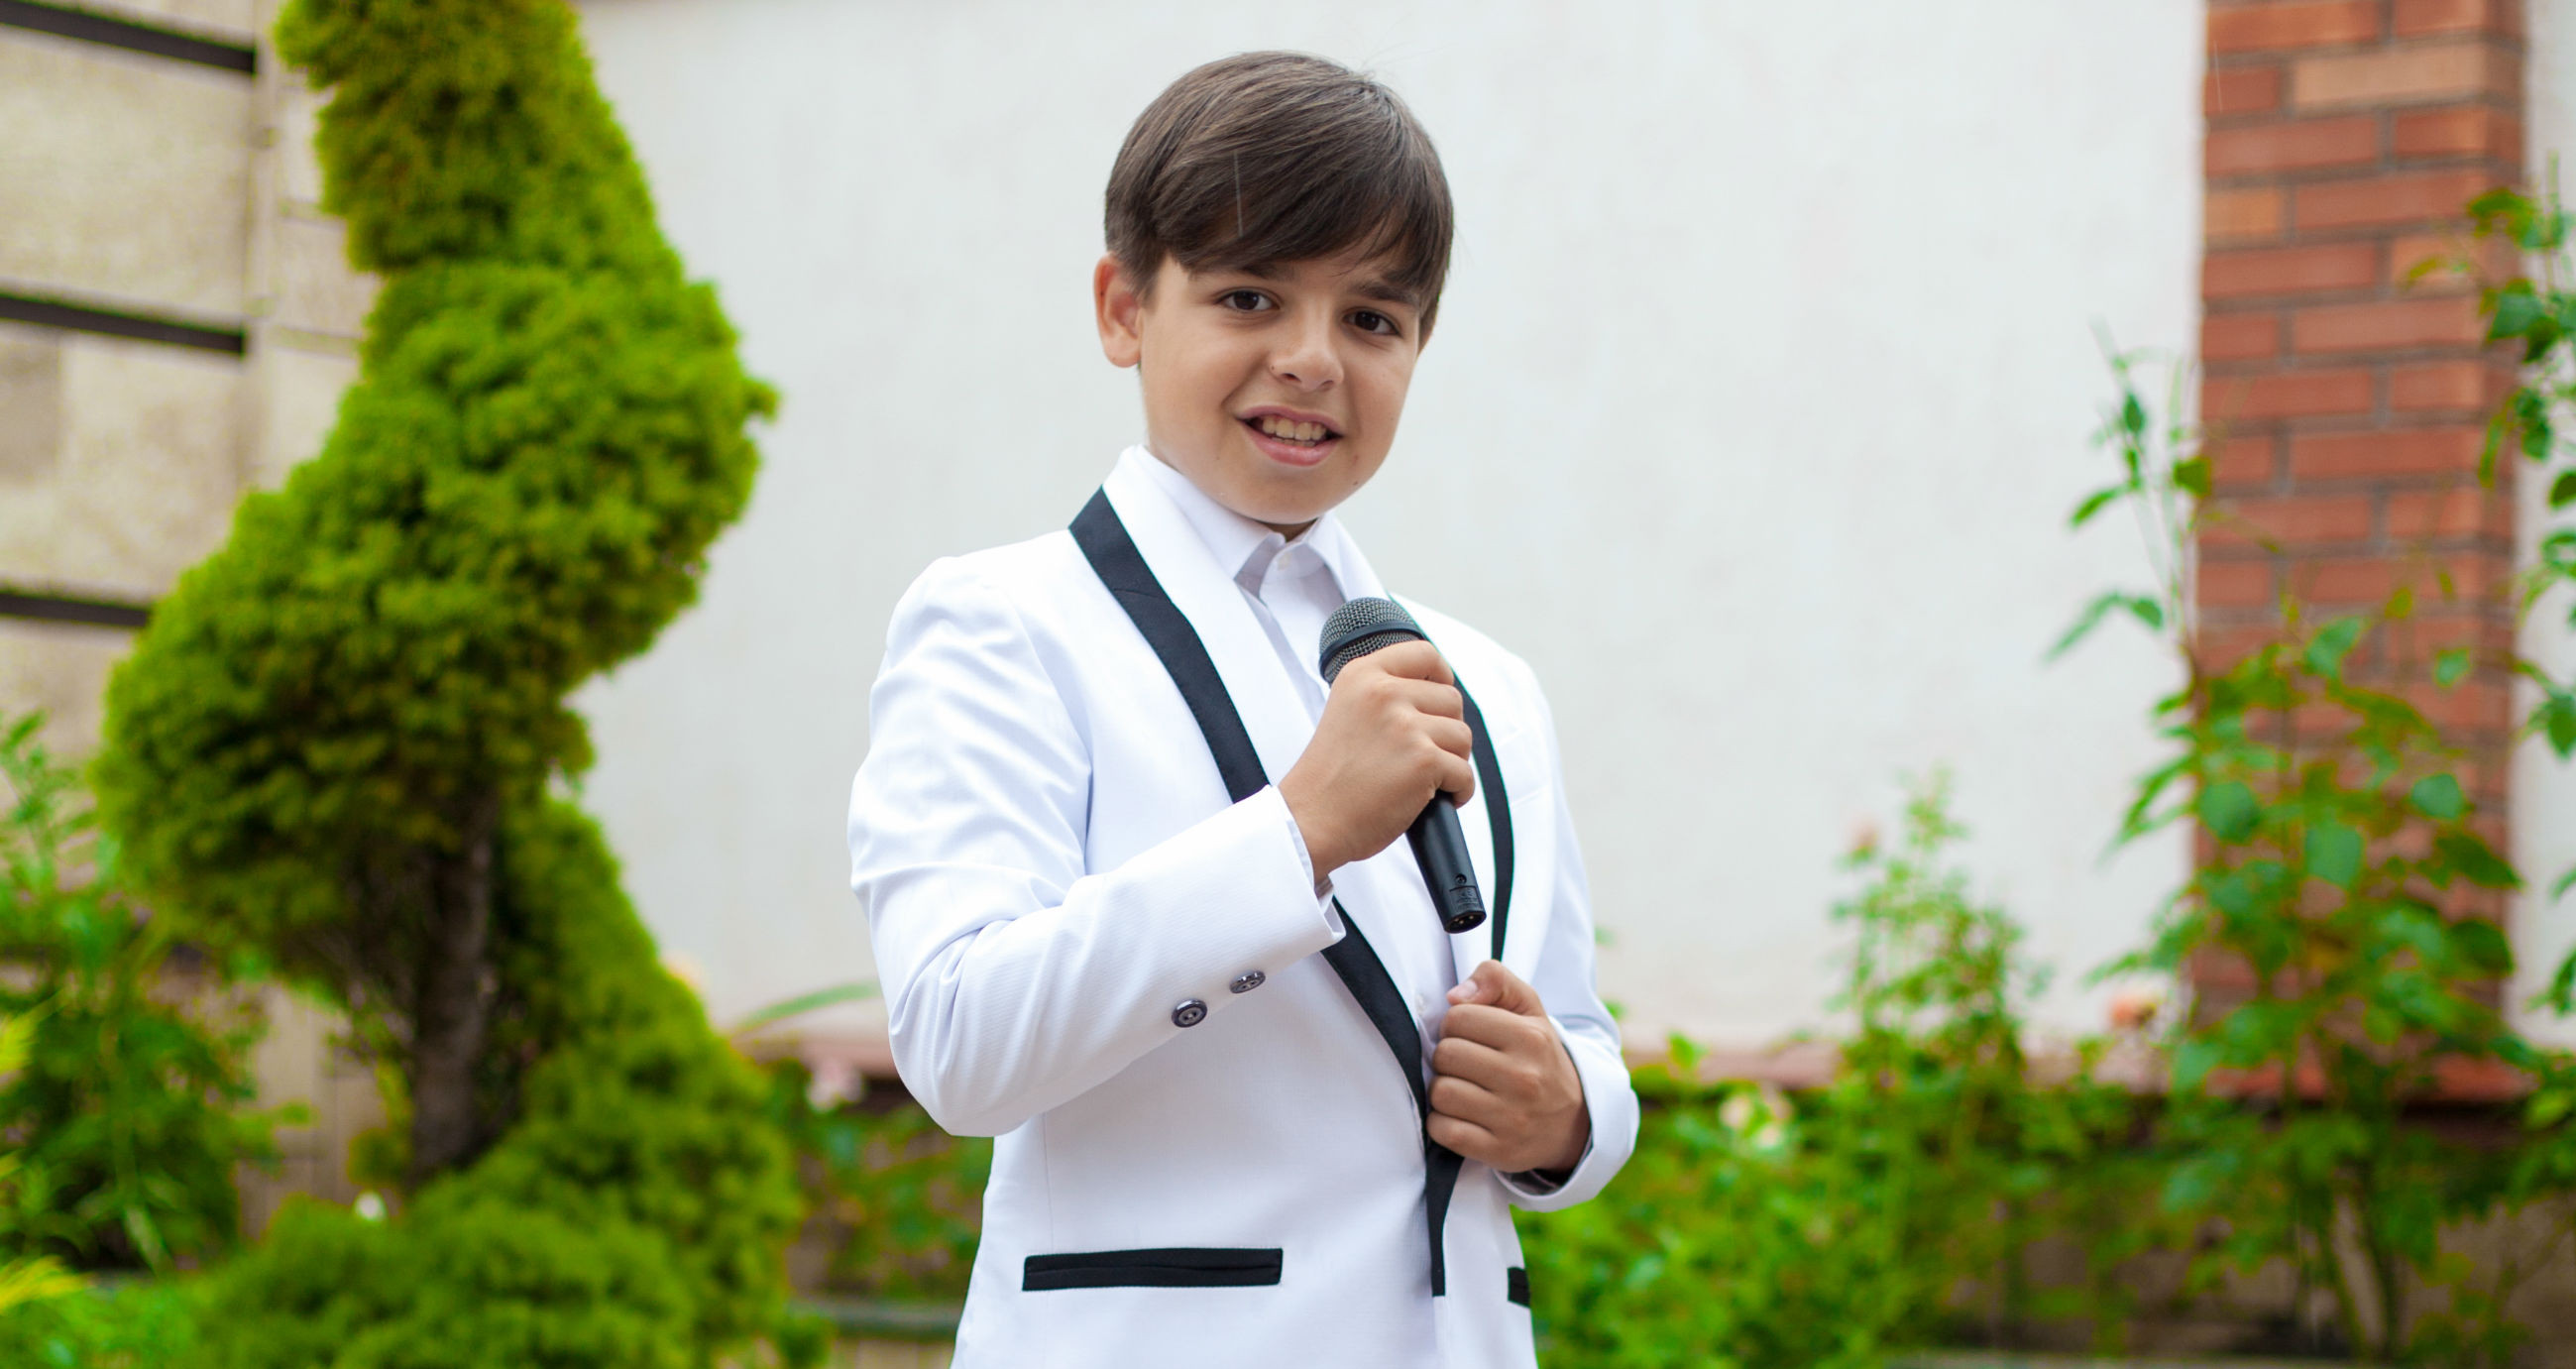 Junior Eurovision: Rafael Bobeica to represent Moldova in Kiev!